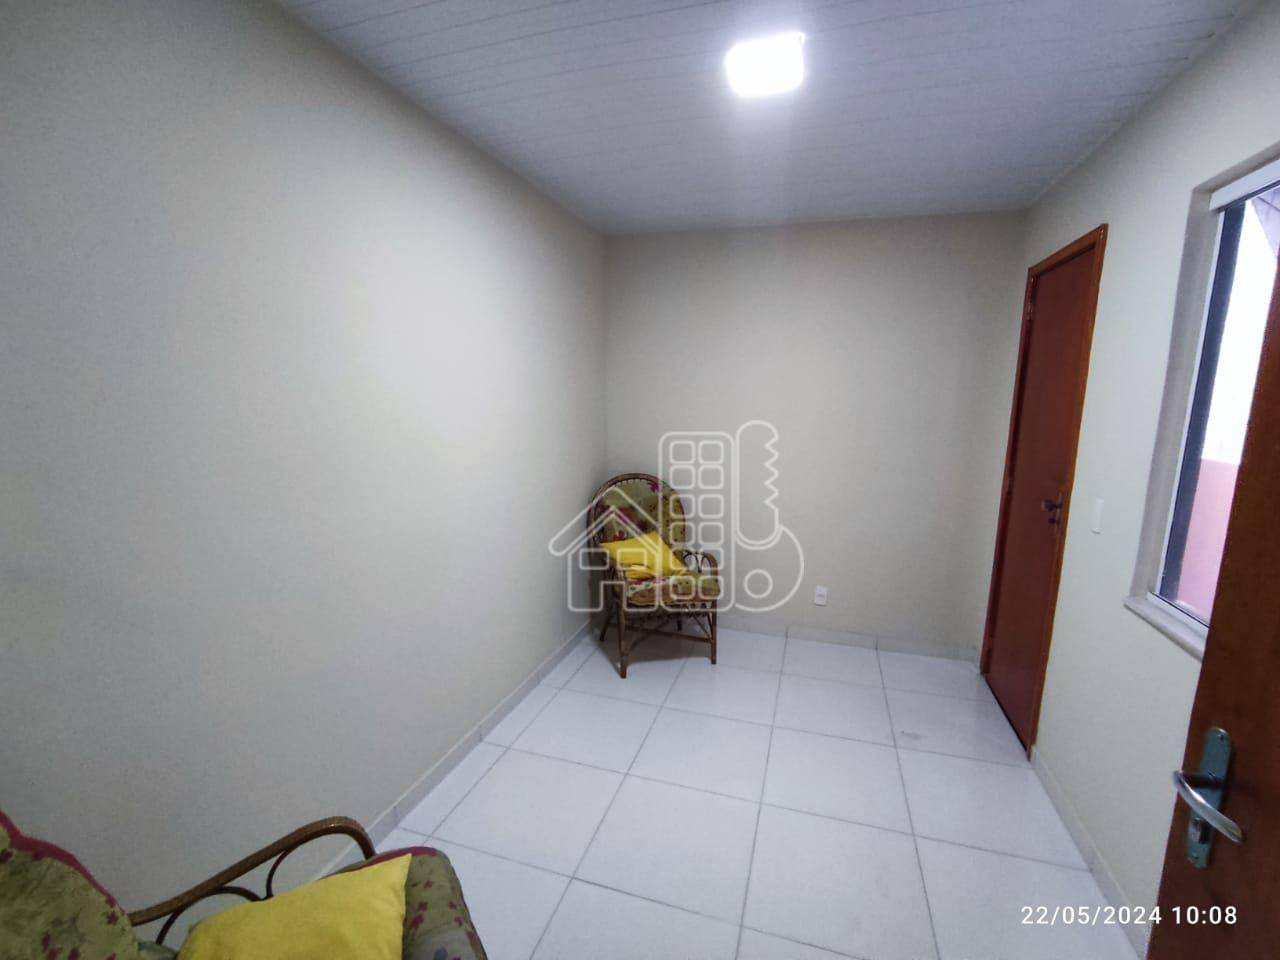 Apartamento com 1 dormitório para alugar, 38 m² por R$ 1.782,00/mês - Icaraí - Niterói/RJ